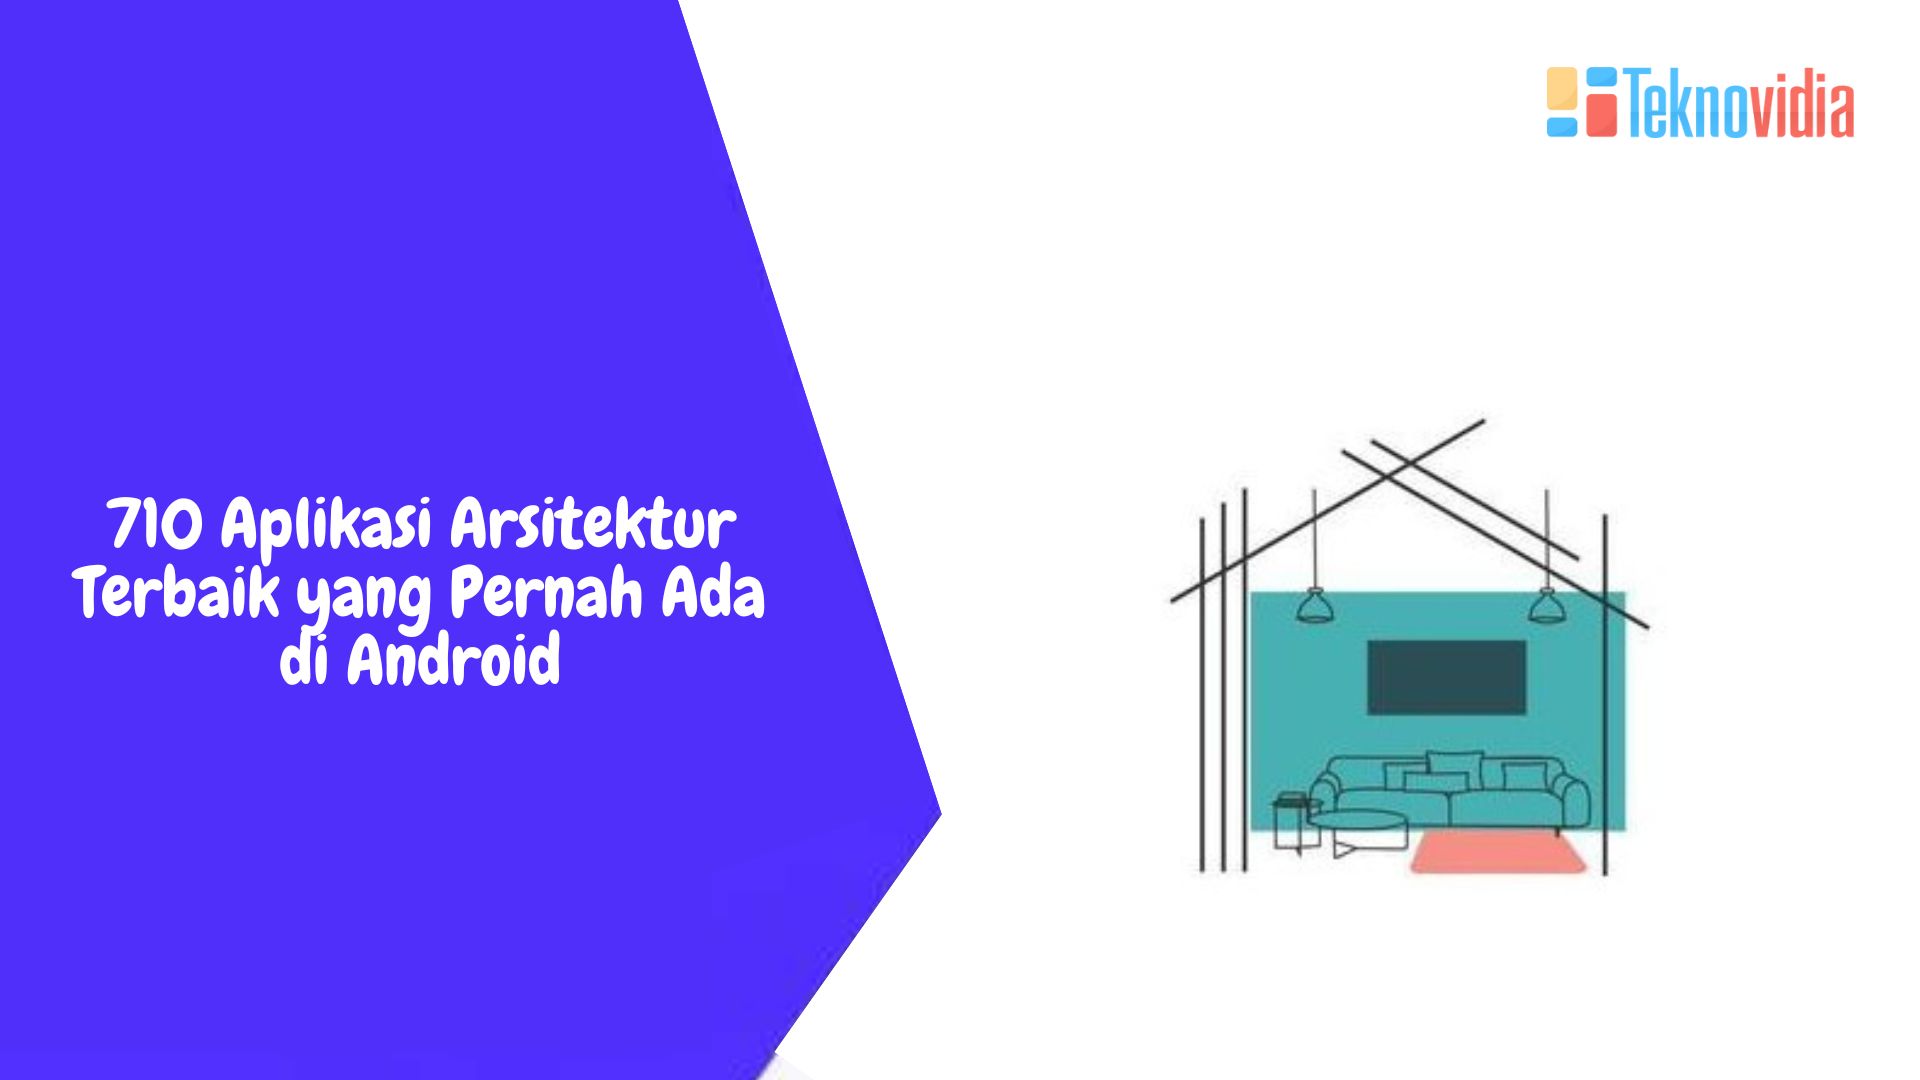 7 Aplikasi Arsitektur Terbaik yang Pernah Ada di Android